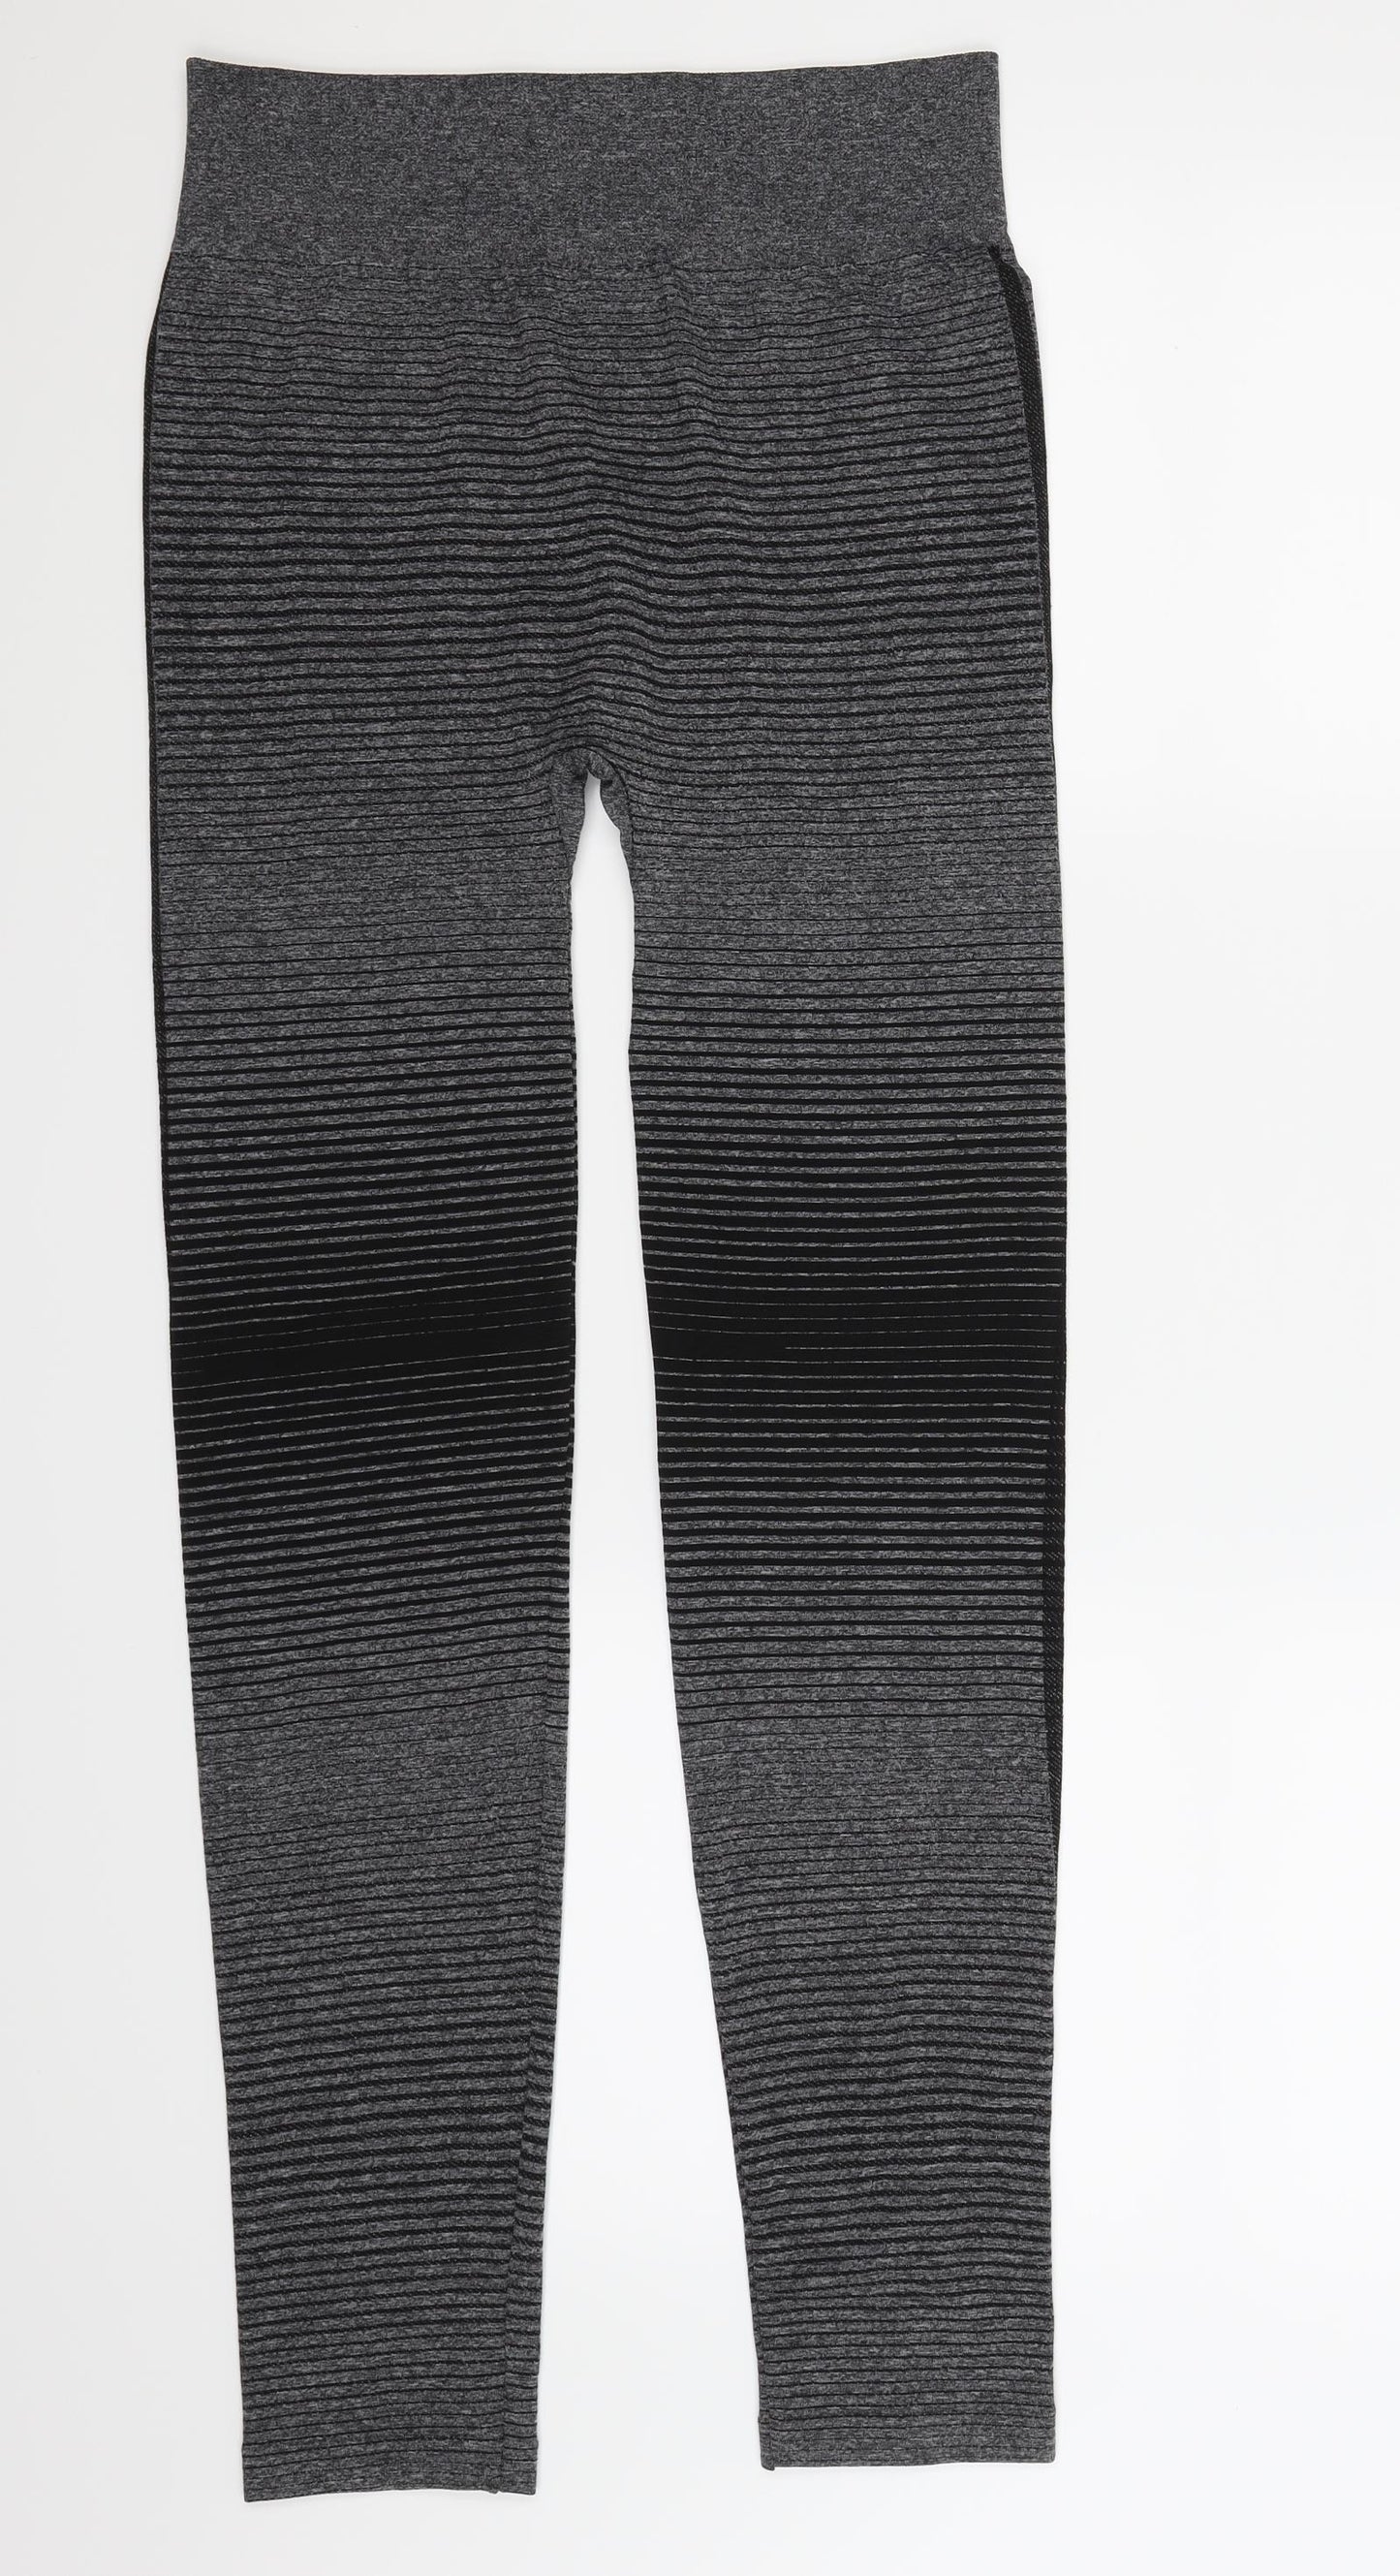 Preworn Womens Grey Striped  Compression Leggings Size 10 L28 in